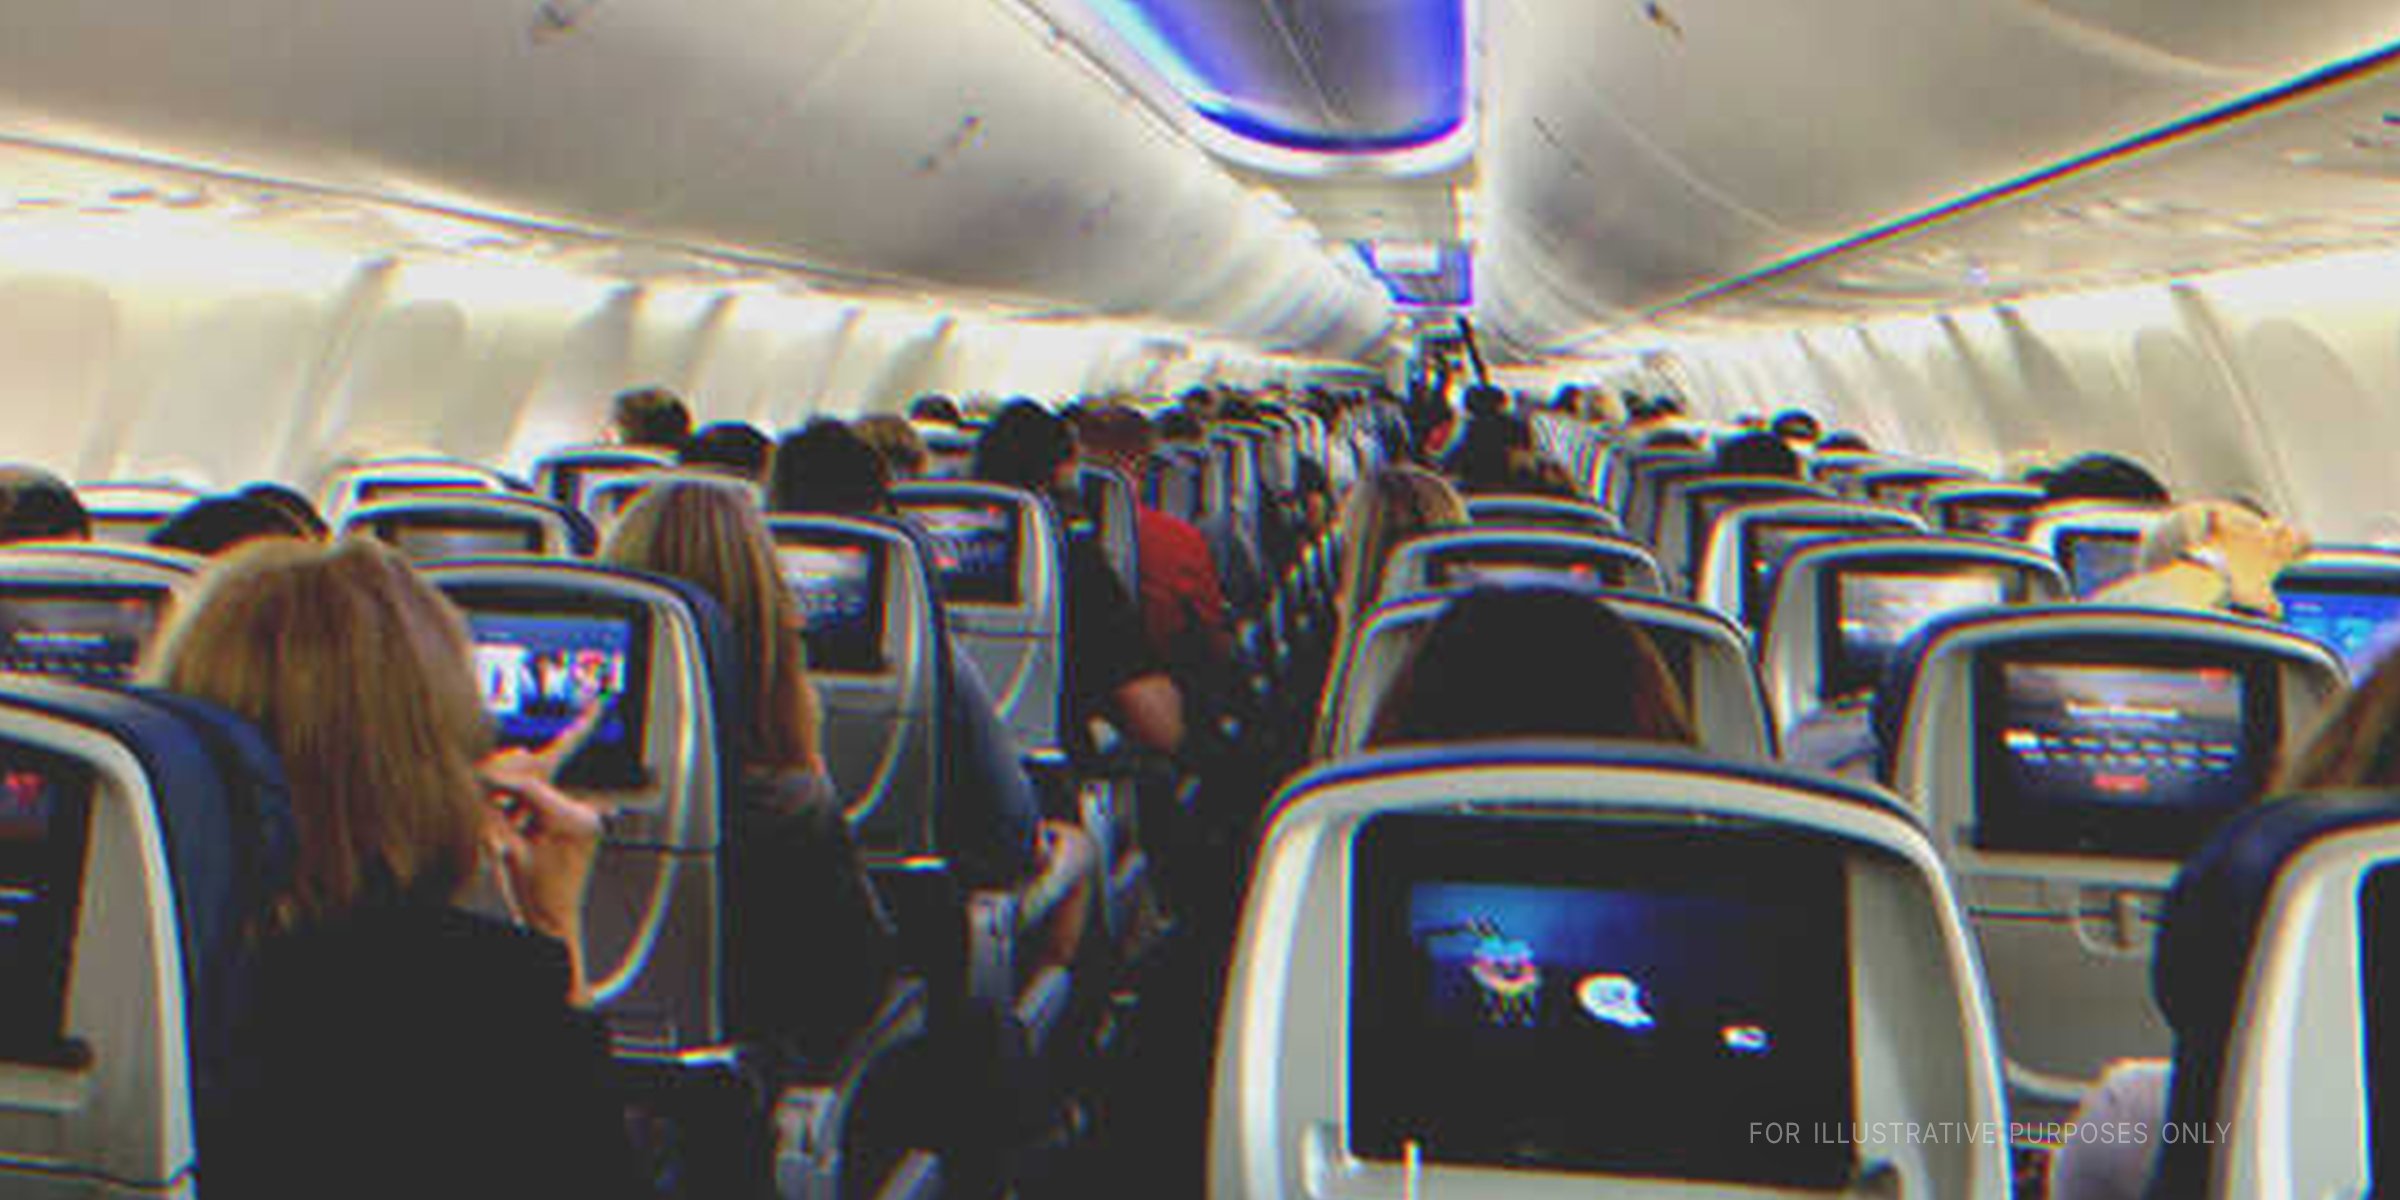 Pasajeros sentados en un avión. | Foto: Shutterstock